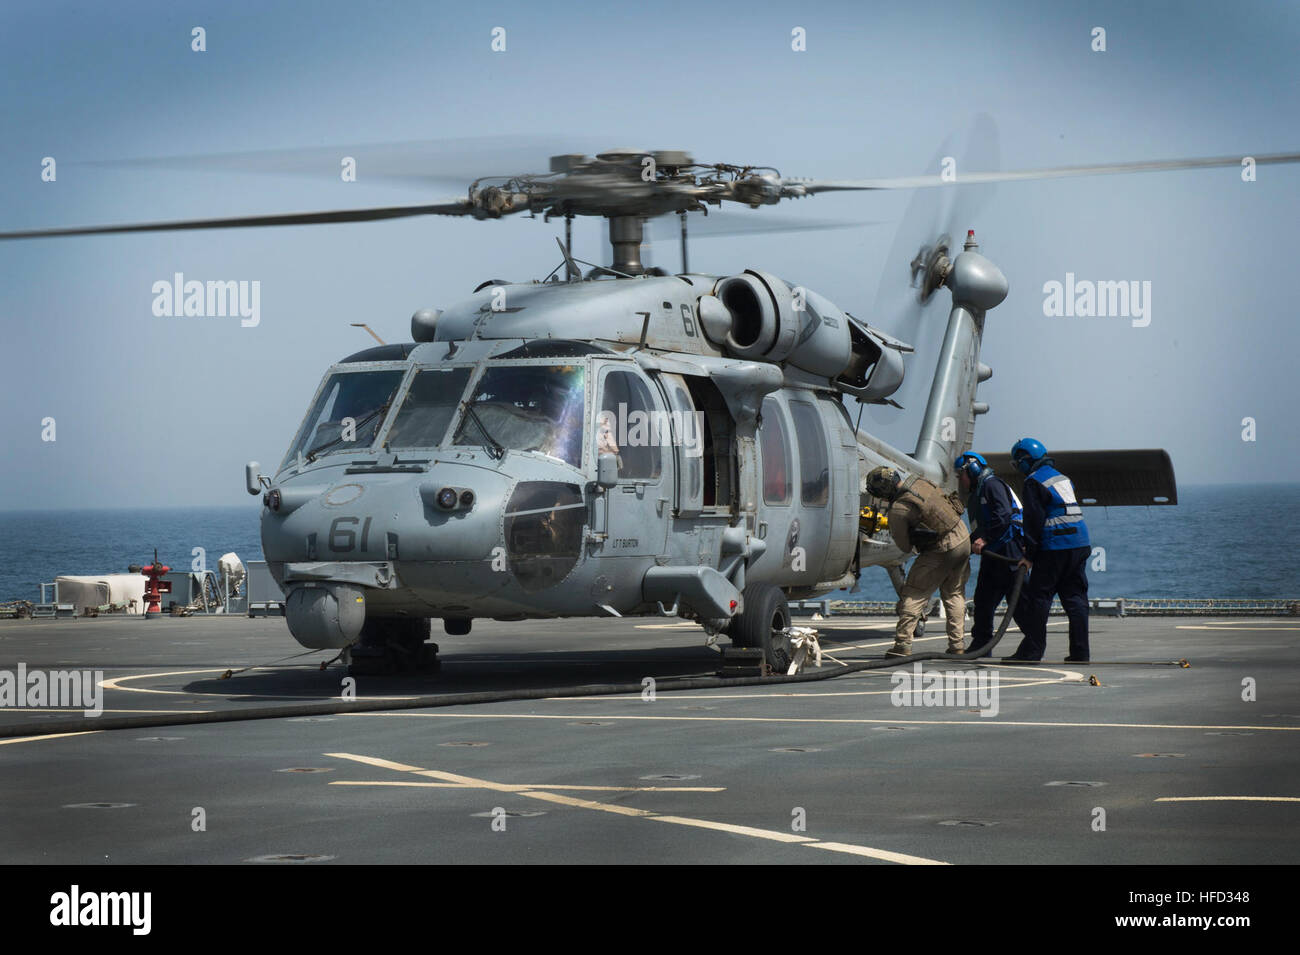 Ein MH-60 Seahawk Hubschrauber Helikopter Meer bekämpfen Geschwader 26, einem det zugewiesen erhält Kraftstoff aus dem Flugdeck der britischen Royal Fleet Auxiliary amphibischer Angriff Schiff RFA Cardigan Bay (L3009).  HSC-26 det ONE ist ein nach vorn eingesetzt Naval Force (Einheimischen) gut befestigt, Commander, Task Force 53, Bekämpfung Logistik und Such- und Bergungskosten Fähigkeit überall in den USA bieten 5. Flotte Aufgabengebiet.  (Foto: U.S. Navy Mass Communication Specialist 1. Klasse Michael Sandberg/freigegeben) Such- und Rettungsdienst (SAR) training 130520-N-OA702-053 Stockfoto